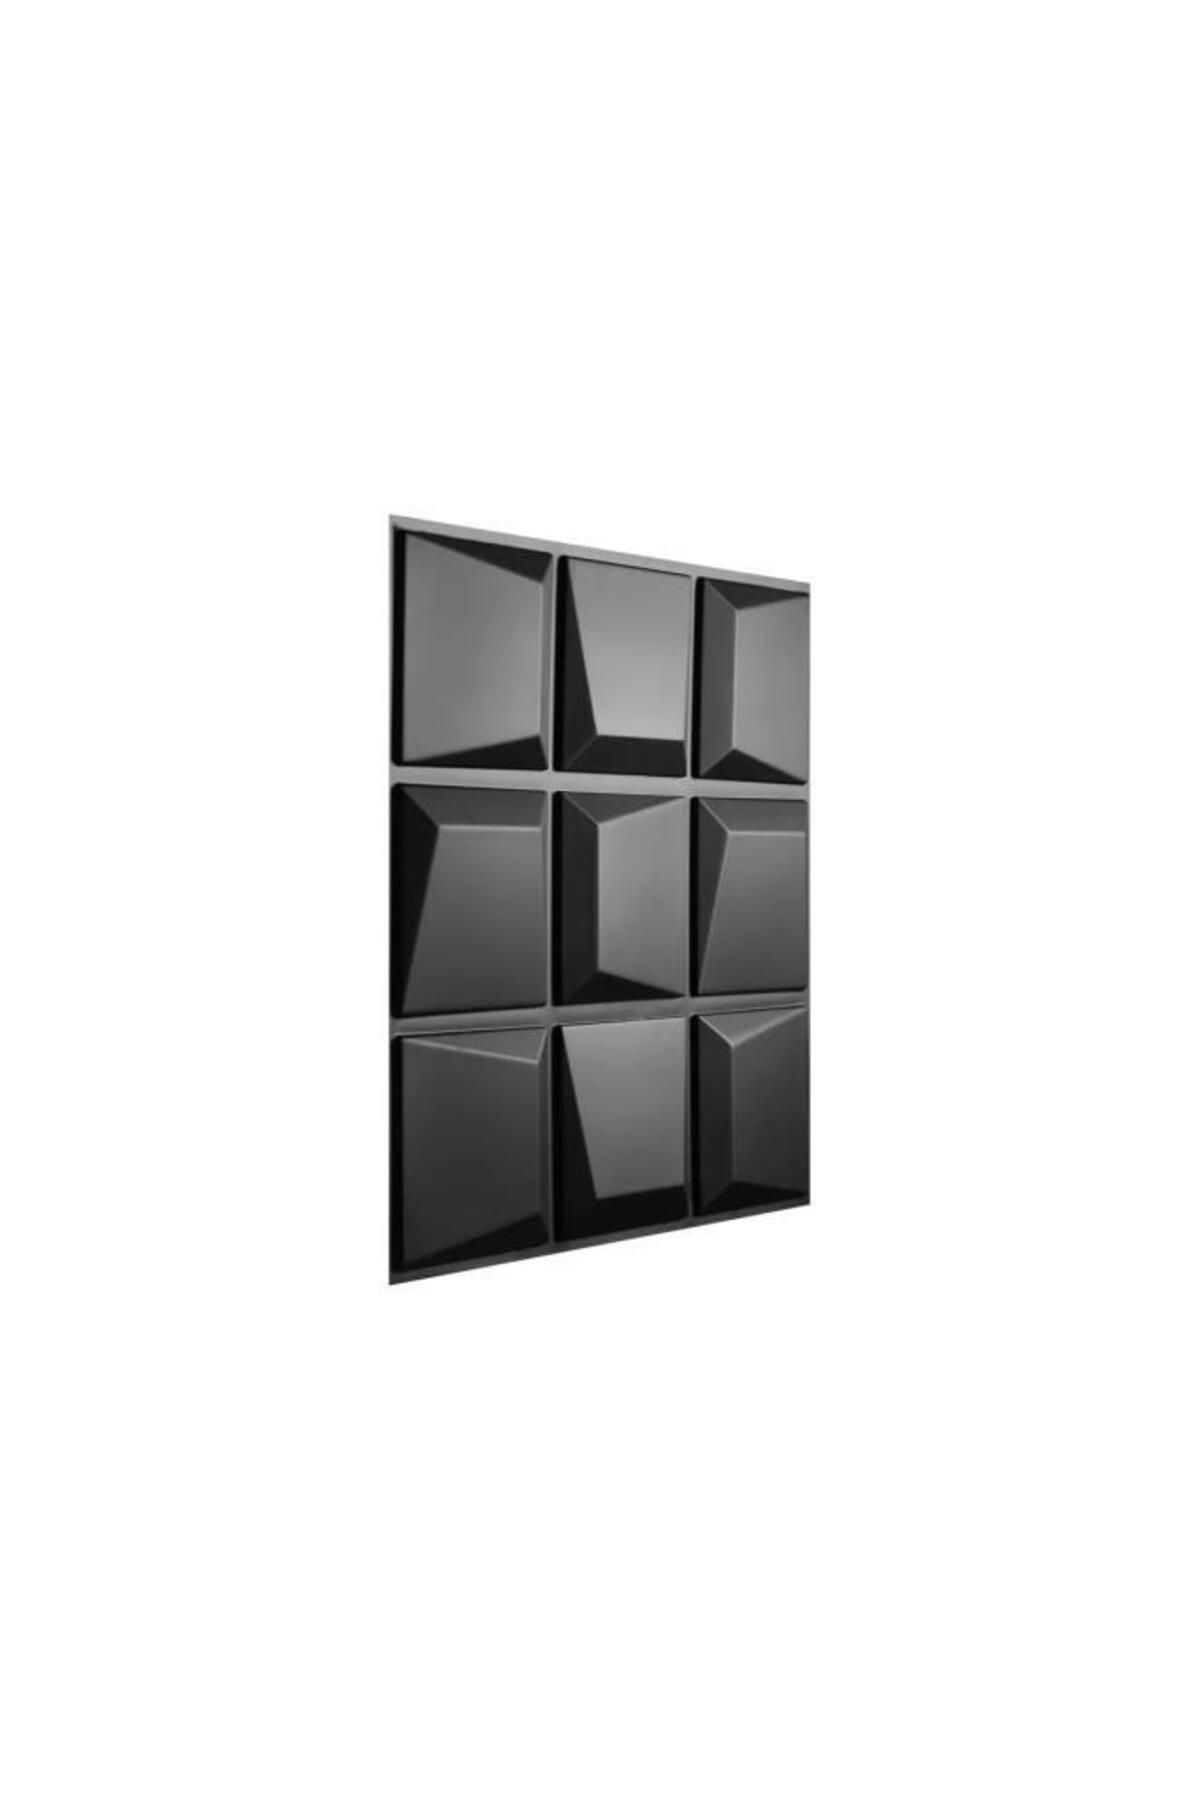 Renkli Duvarlar 50x50cm 1 Adet Yıkanabilir 3D Yapışkanlı Siyah Geometrik Desen Boyanabilir Duvar Paneli Kağıdı ABS